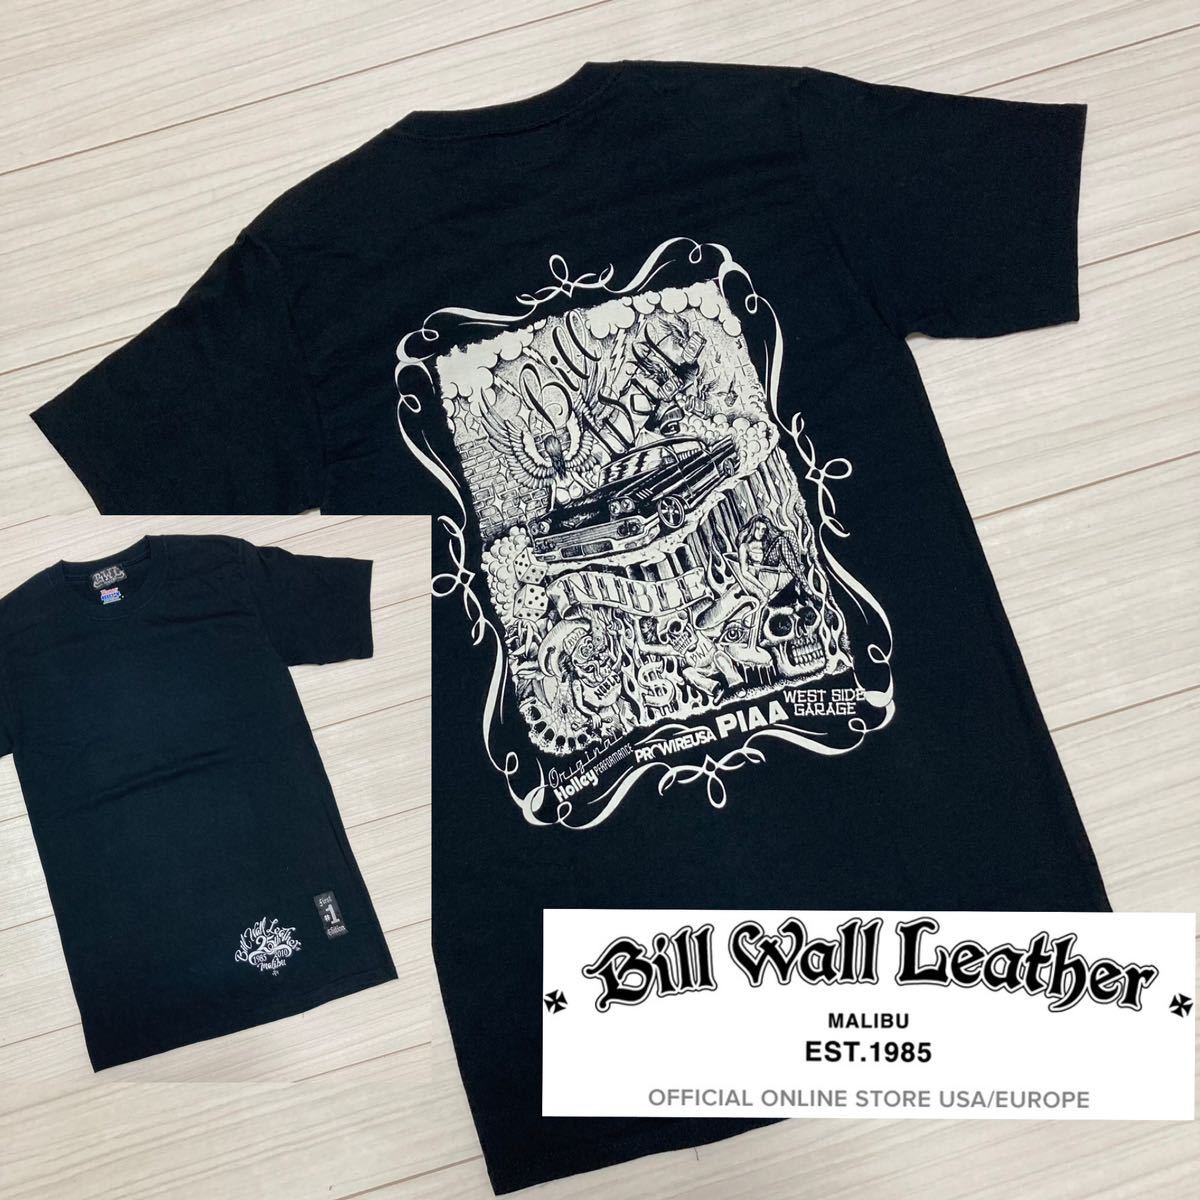 25th Ann BILL WALL LEATHER スカル #1 Tシャツ S 黒 ブラック 25th